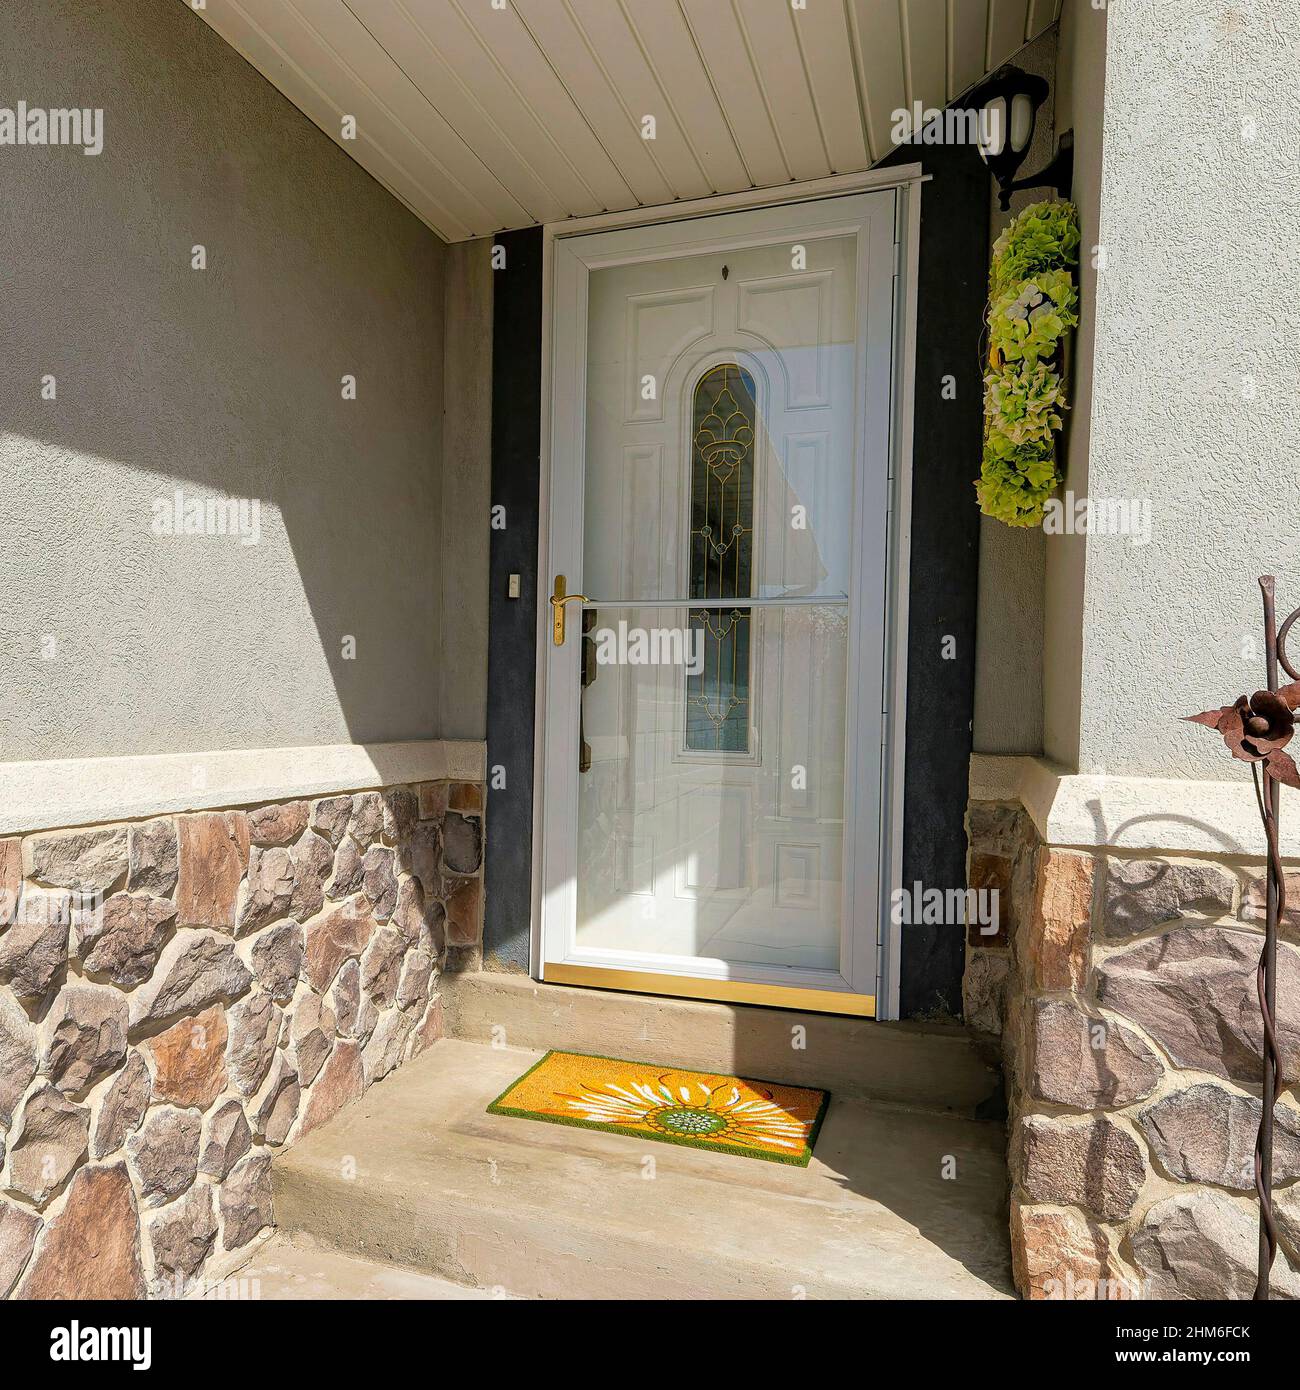 Square Home Eingang neben der Garage mit Glas Sturmtür und weiße Tür mit  verzierten Glas Stockfotografie - Alamy